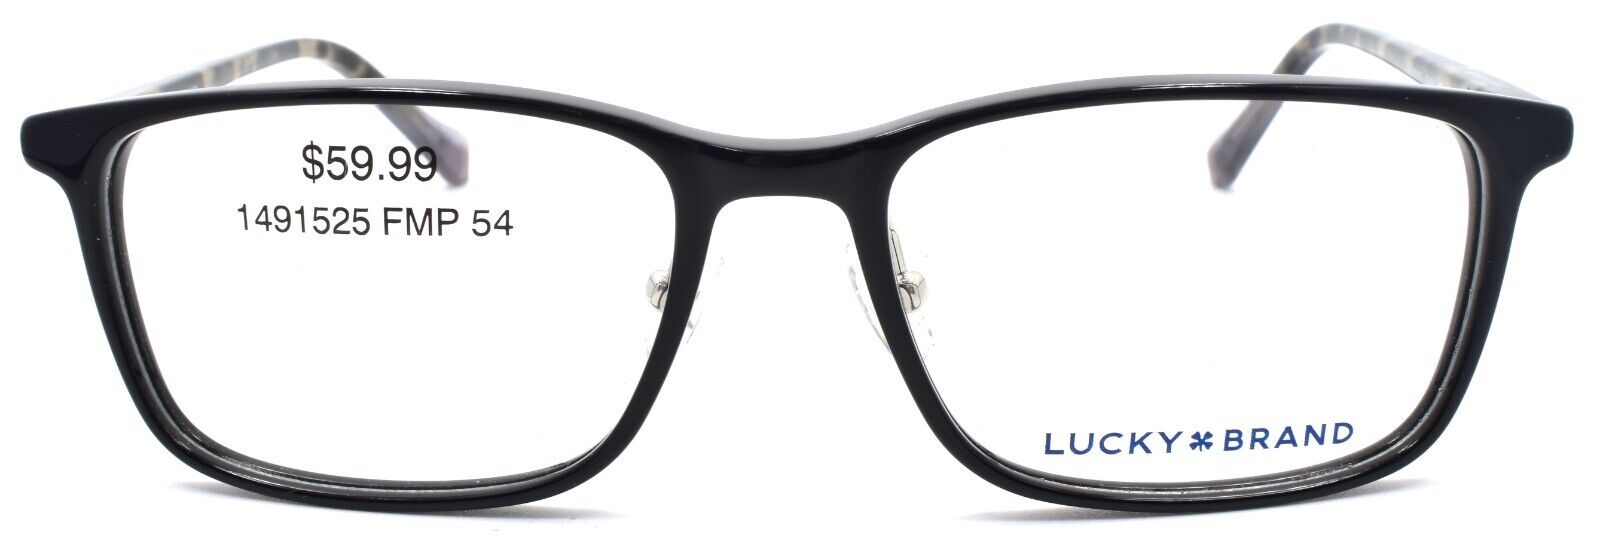 2-LUCKY BRAND VLBD516 Men's Eyeglasses Frames 54-17-140 Black-751286352627-IKSpecs